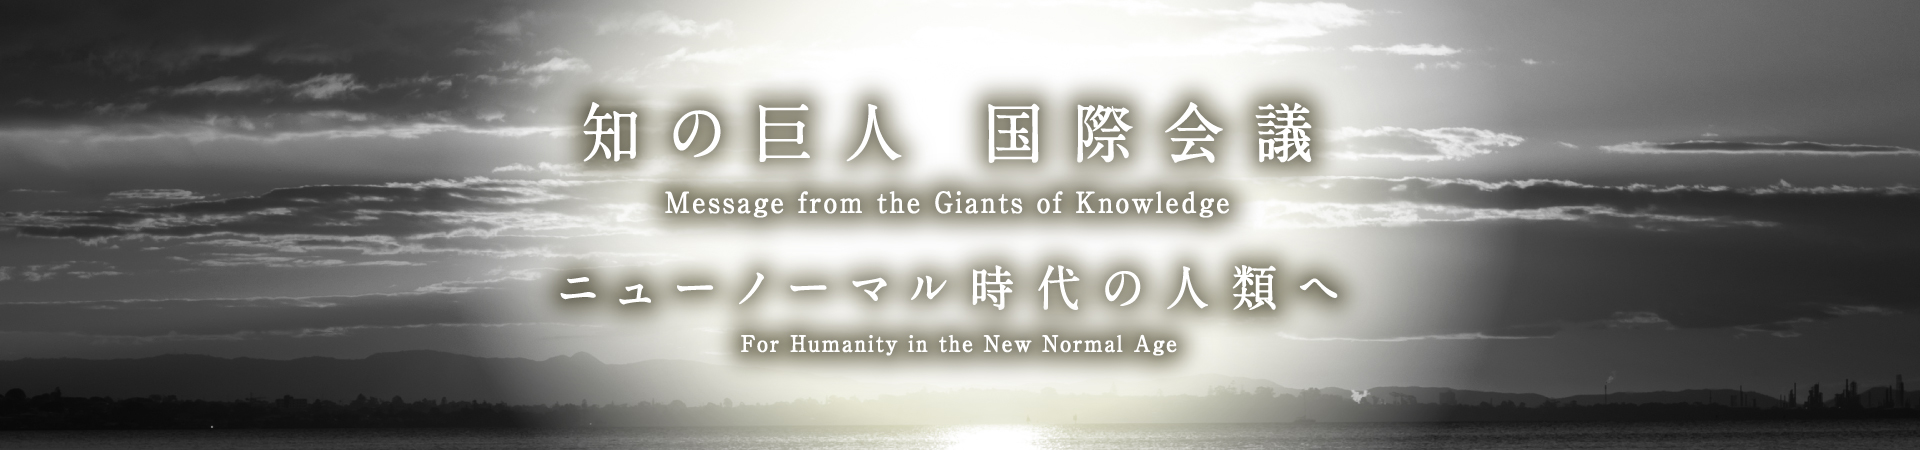 「知の巨人 国際会議」ニューノーマル時代の人類へ